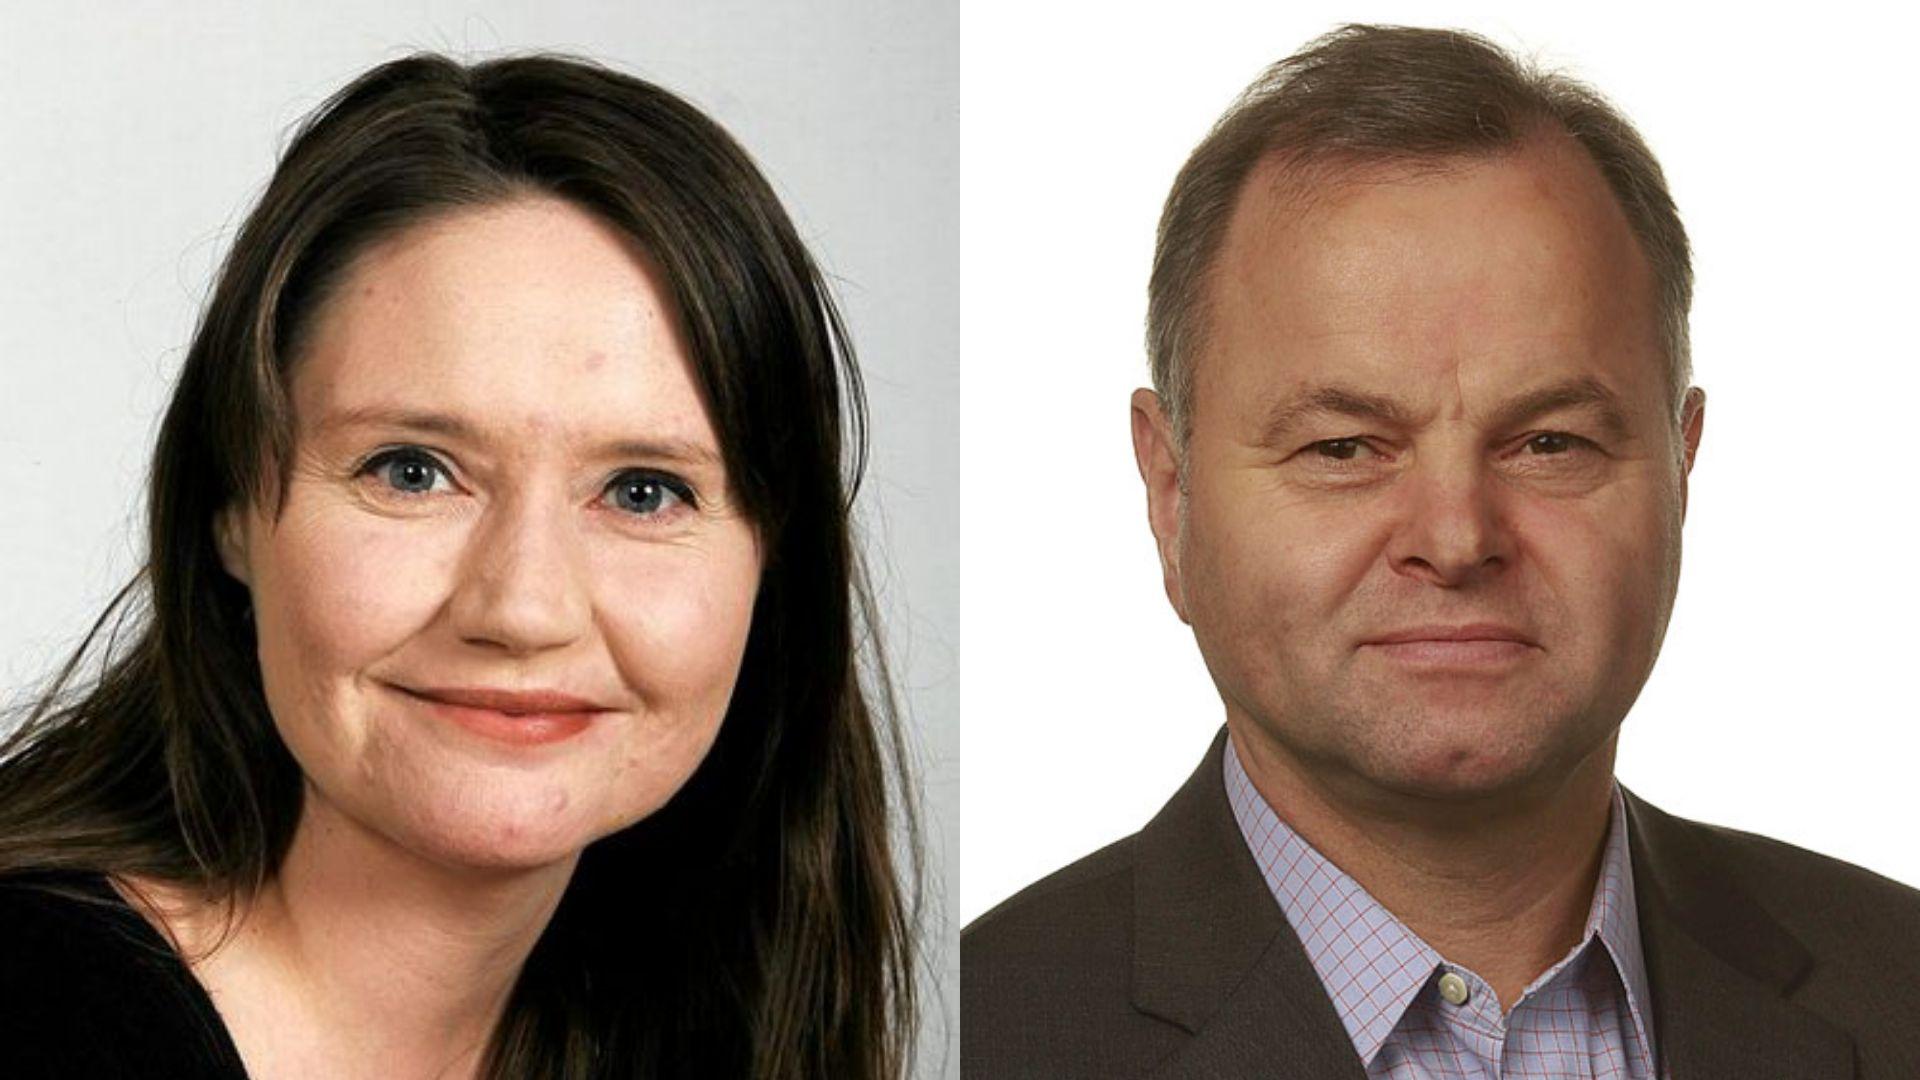  Eva Kristin Hansen er Arbeiderpartiets kandidat til å bli Norges neste stortingspresident. Olemic Thommesen, som hadde vervet forrige periode, er Høyre og de andre borgerlige partienes kandidat. 